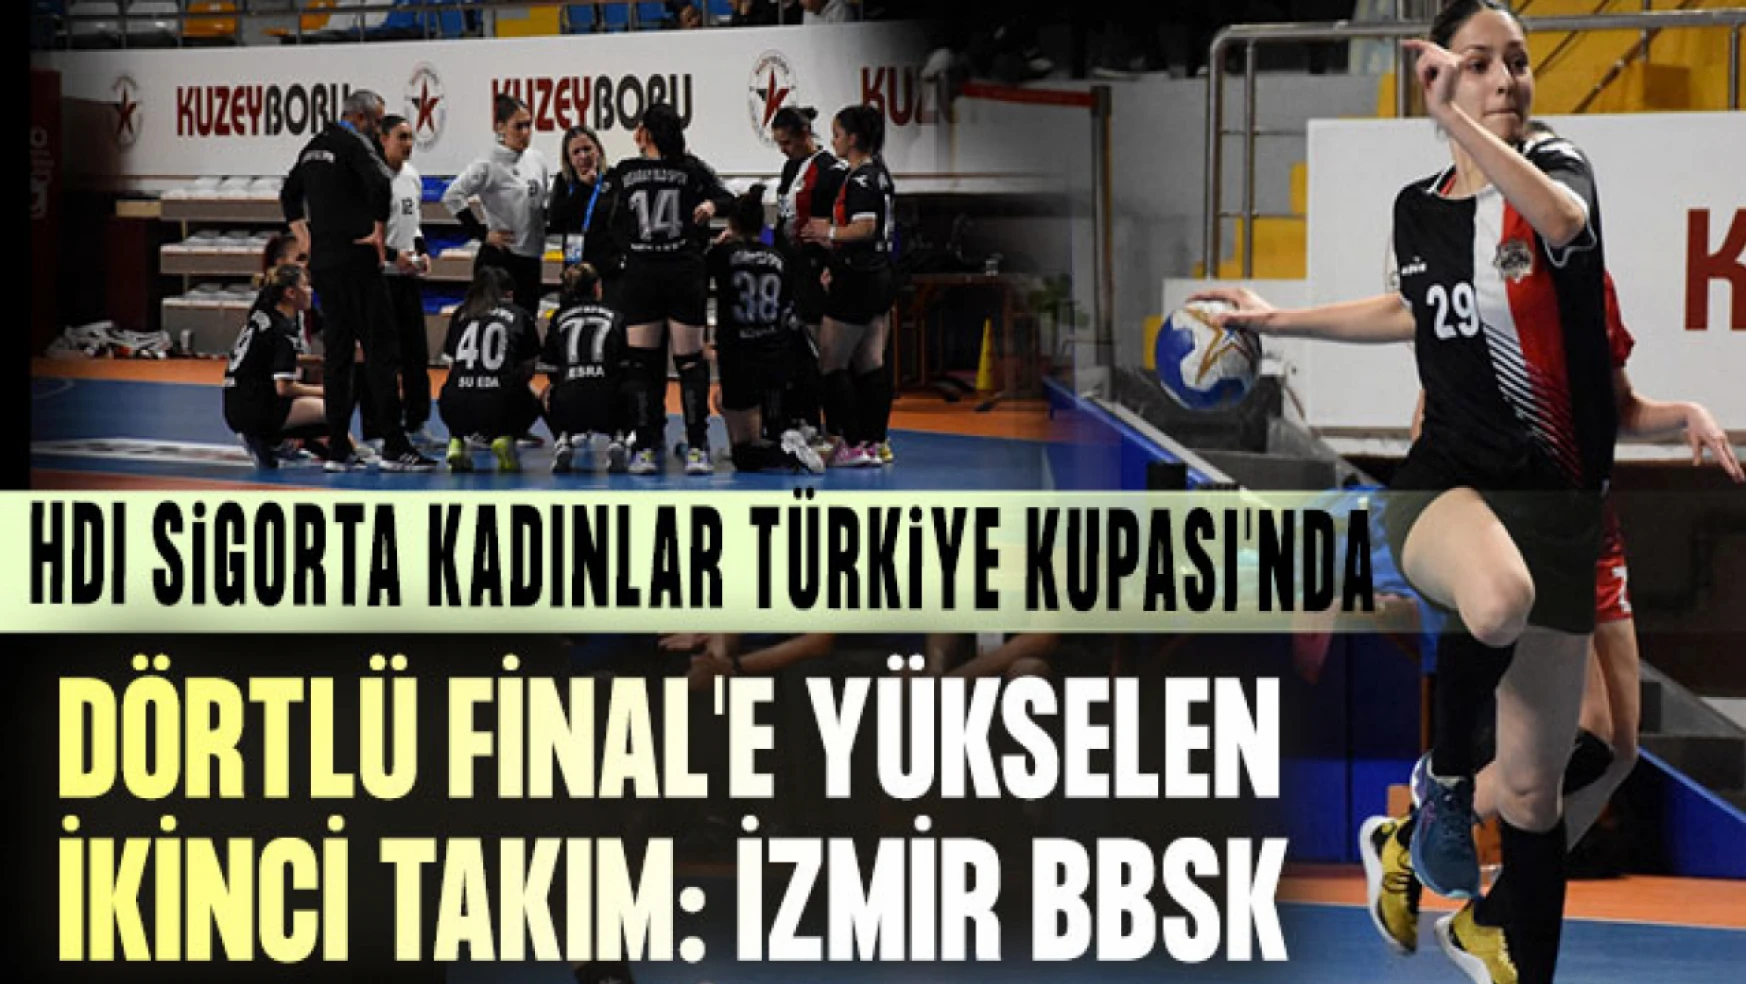 HDI Sigorta Kadınlar Türkiye Kupası'nda Dörtlü Final'e Yükselen İkinci Takım: İzmir BBSK